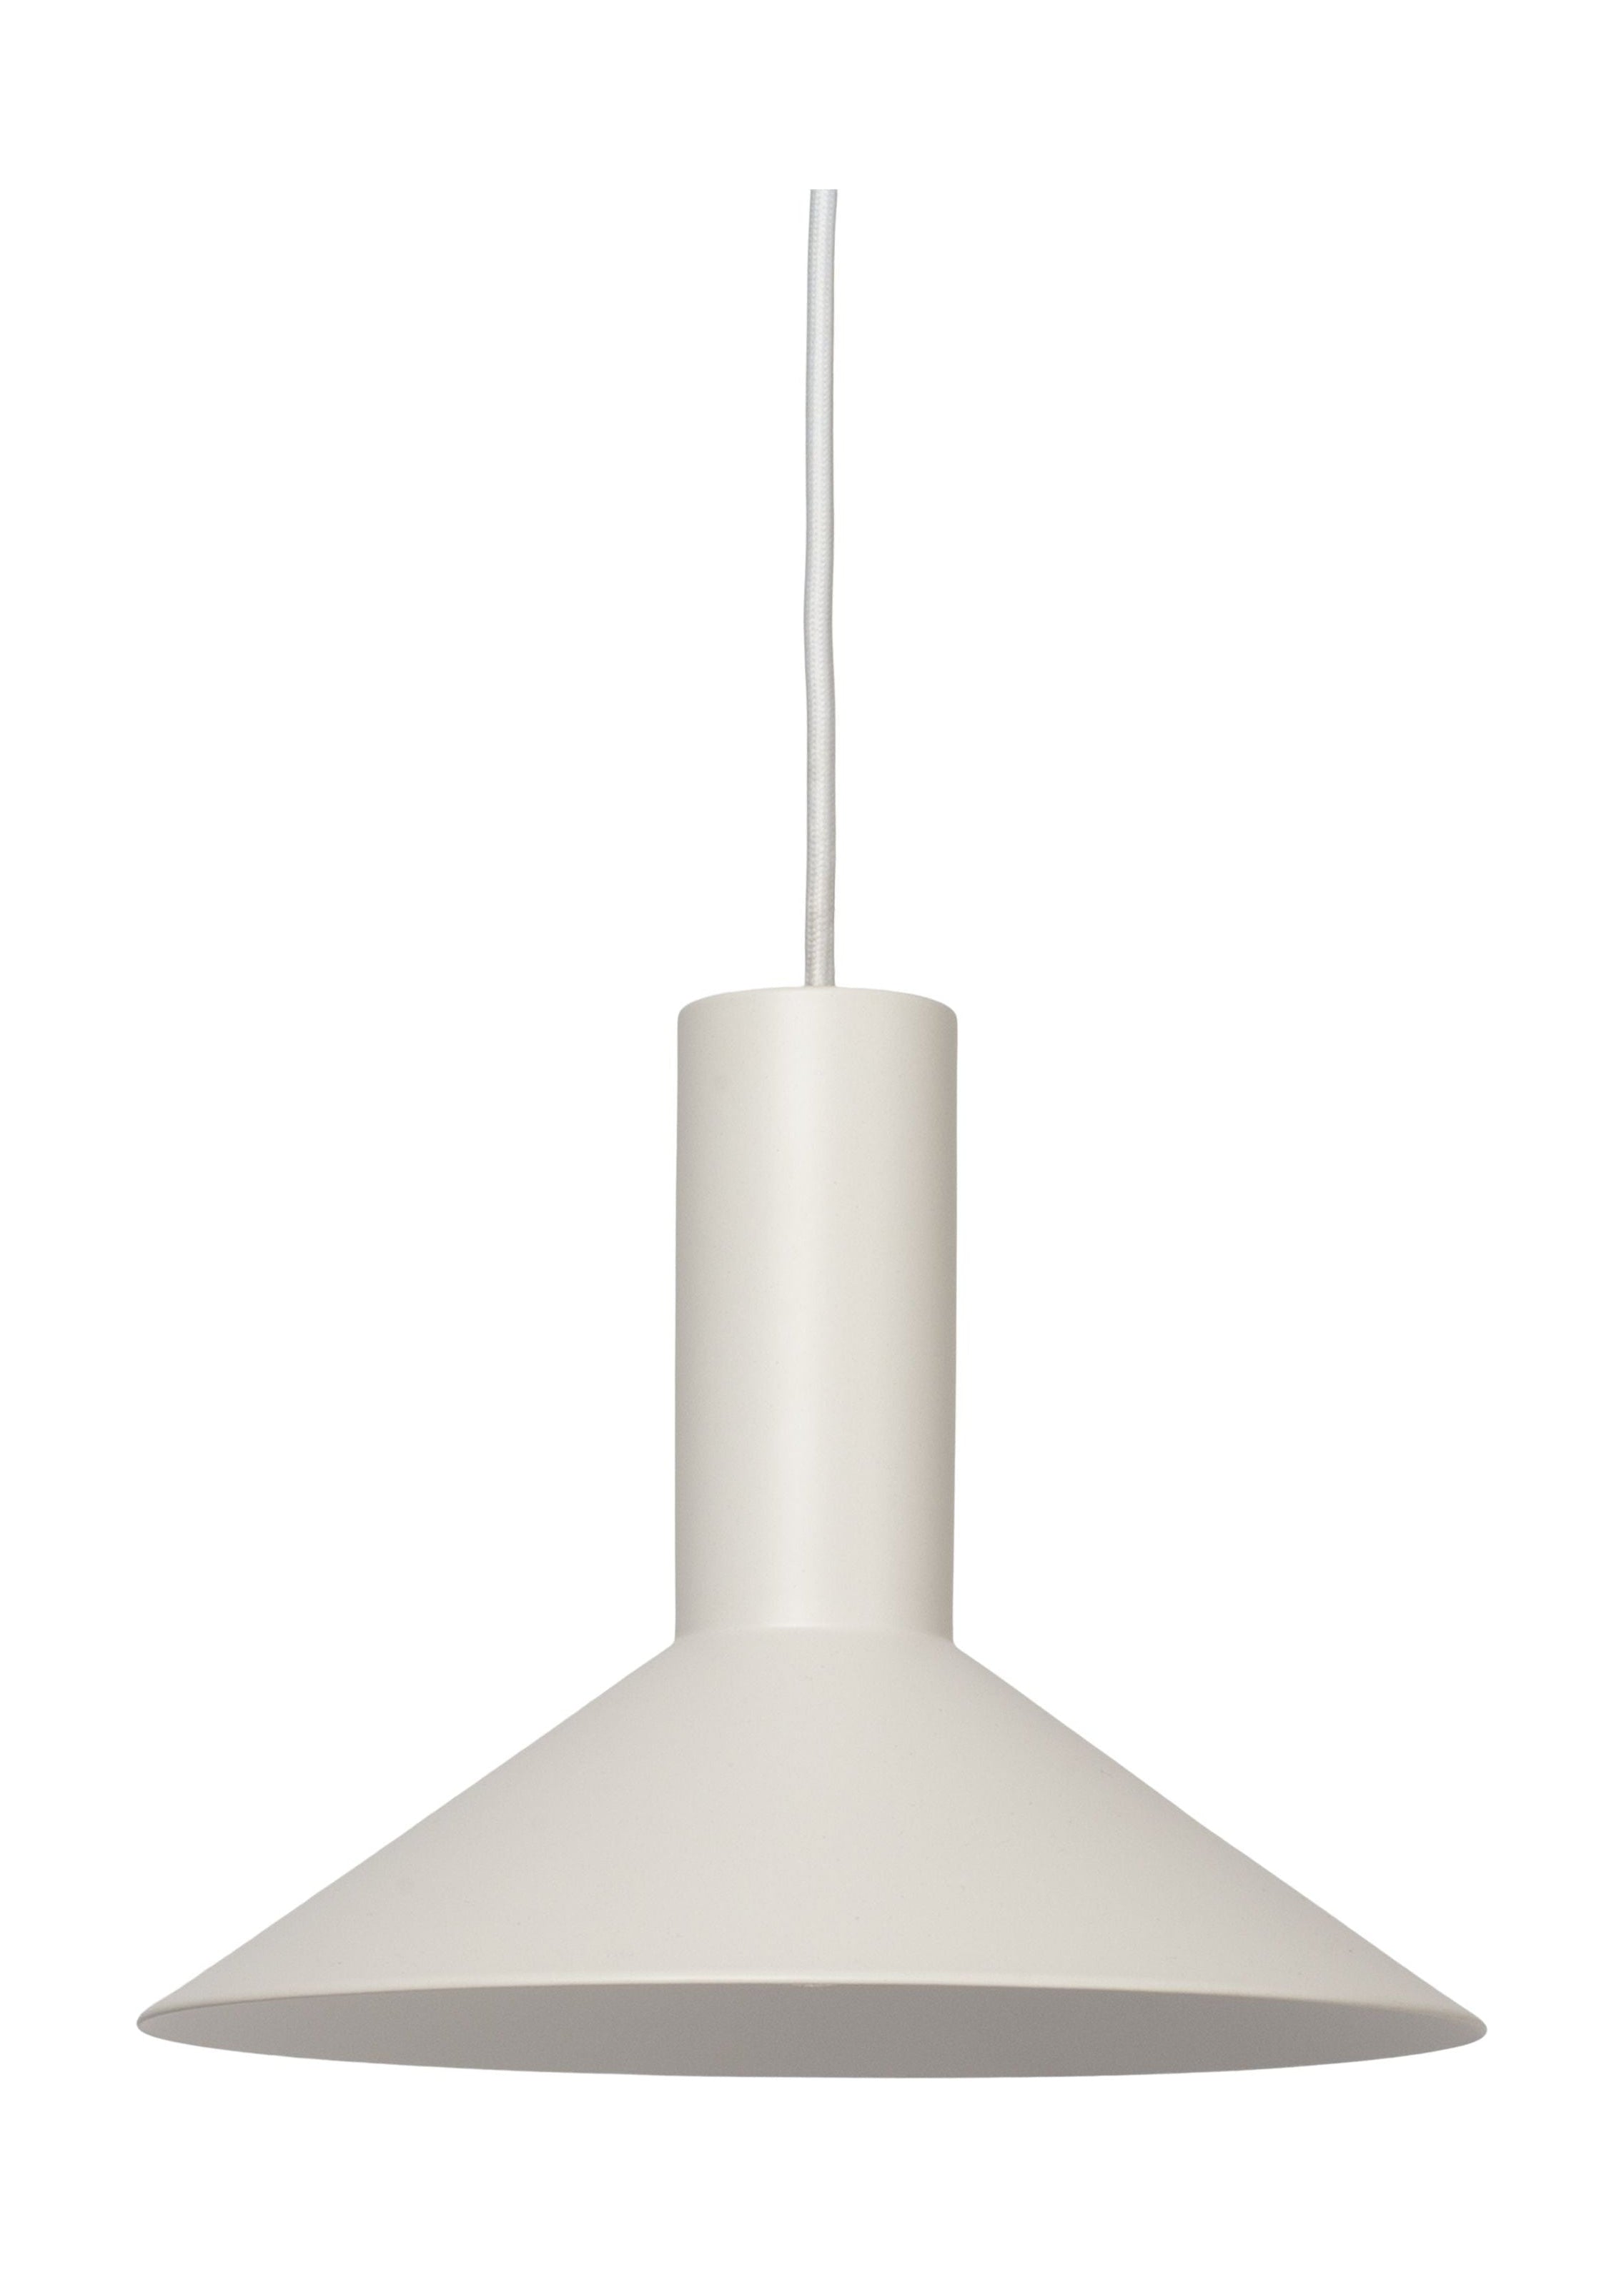 Forårskøbenhavns formel vedhængslamp Ø26, hvid